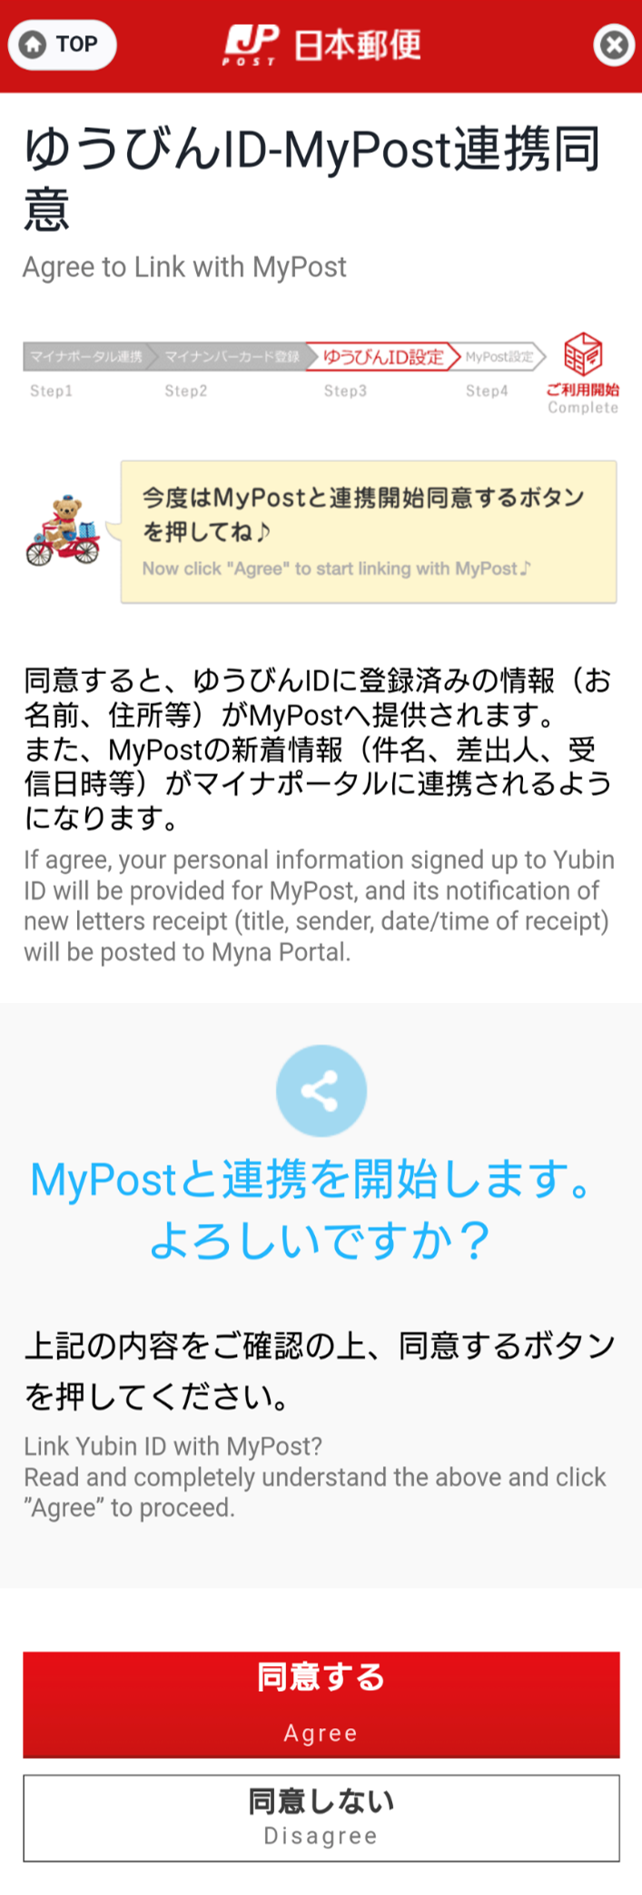 ゆうびんID-MyPost連携